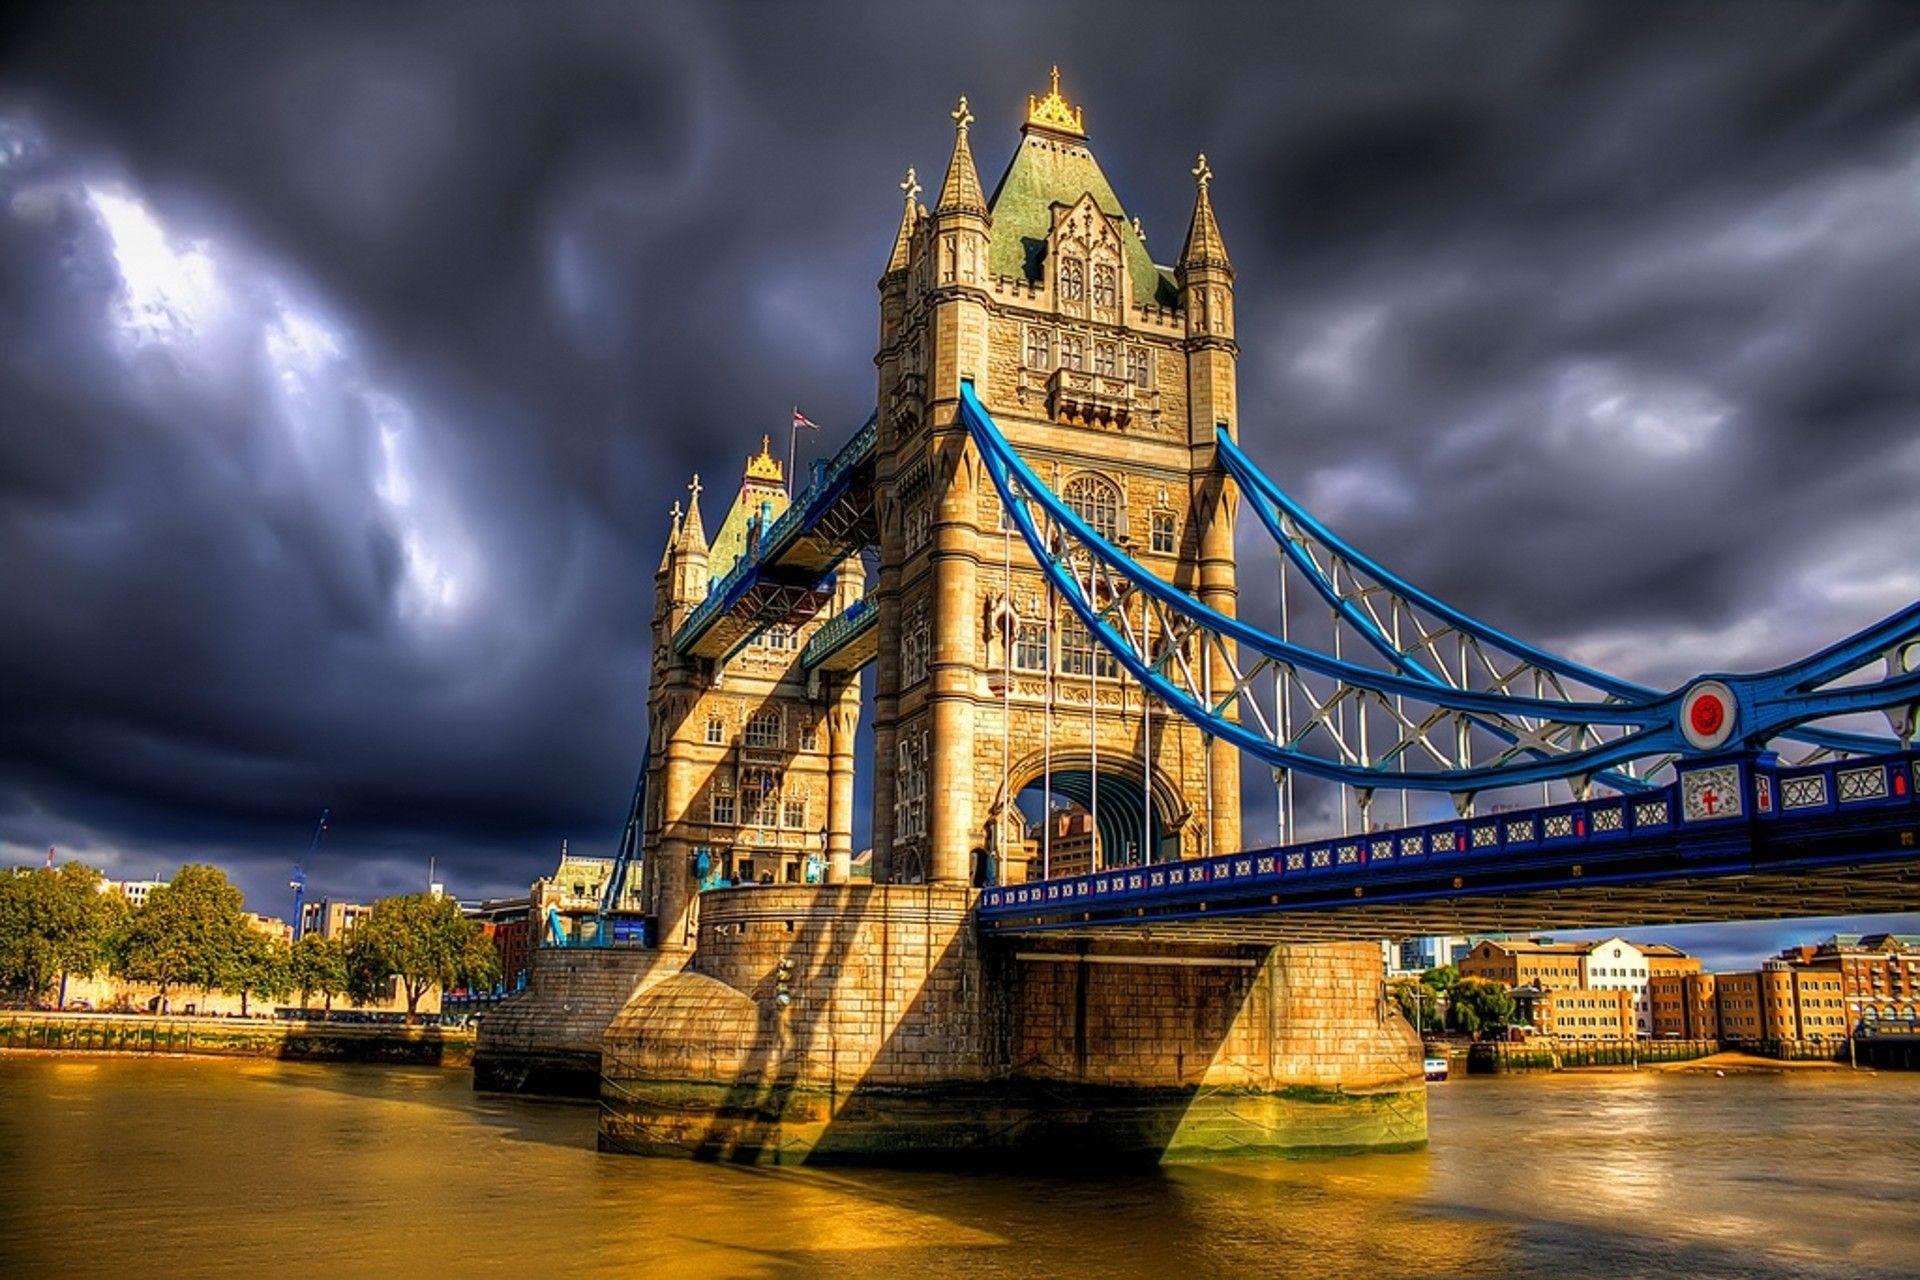 London Bridge Images  Free Download on Freepik